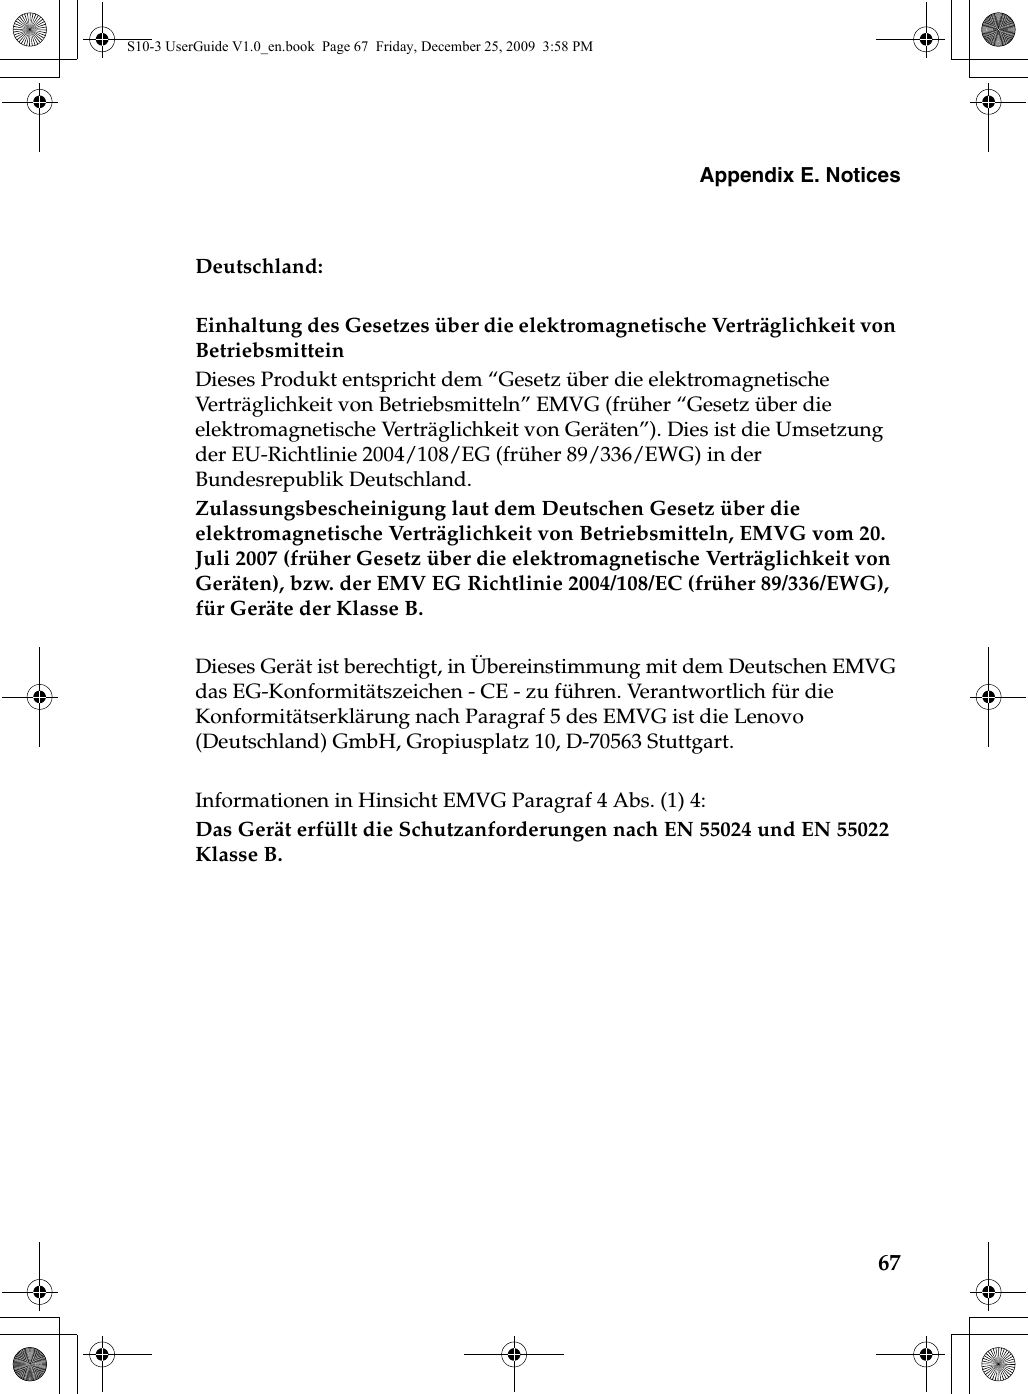 Appendix E. Notices67Deutschland: Einhaltung des Gesetzes über die elektromagnetische Verträglichkeit von Betriebsmittein Dieses Produkt entspricht dem “Gesetz über die elektromagnetische Verträglichkeit von Betriebsmitteln” EMVG (früher “Gesetz über die elektromagnetische Verträglichkeit von Geräten”). Dies ist die Umsetzung der EU-Richtlinie 2004/108/EG (früher 89/336/EWG) in der Bundesrepublik Deutschland. Zulassungsbescheinigung laut dem Deutschen Gesetz über die elektromagnetische Verträglichkeit von Betriebsmitteln, EMVG vom 20. Juli 2007 (früher Gesetz über die elektromagnetische Verträglichkeit von Geräten), bzw. der EMV EG Richtlinie 2004/108/EC (früher 89/336/EWG), für Geräte der Klasse B. Dieses Gerät ist berechtigt, in Übereinstimmung mit dem Deutschen EMVG das EG-Konformitätszeichen - CE - zu führen. Verantwortlich für die Konformitätserklärung nach Paragraf 5 des EMVG ist die Lenovo (Deutschland) GmbH, Gropiusplatz 10, D-70563 Stuttgart. Informationen in Hinsicht EMVG Paragraf 4 Abs. (1) 4: Das Gerät erfüllt die Schutzanforderungen nach EN 55024 und EN 55022 Klasse B.S10-3 UserGuide V1.0_en.book  Page 67  Friday, December 25, 2009  3:58 PM